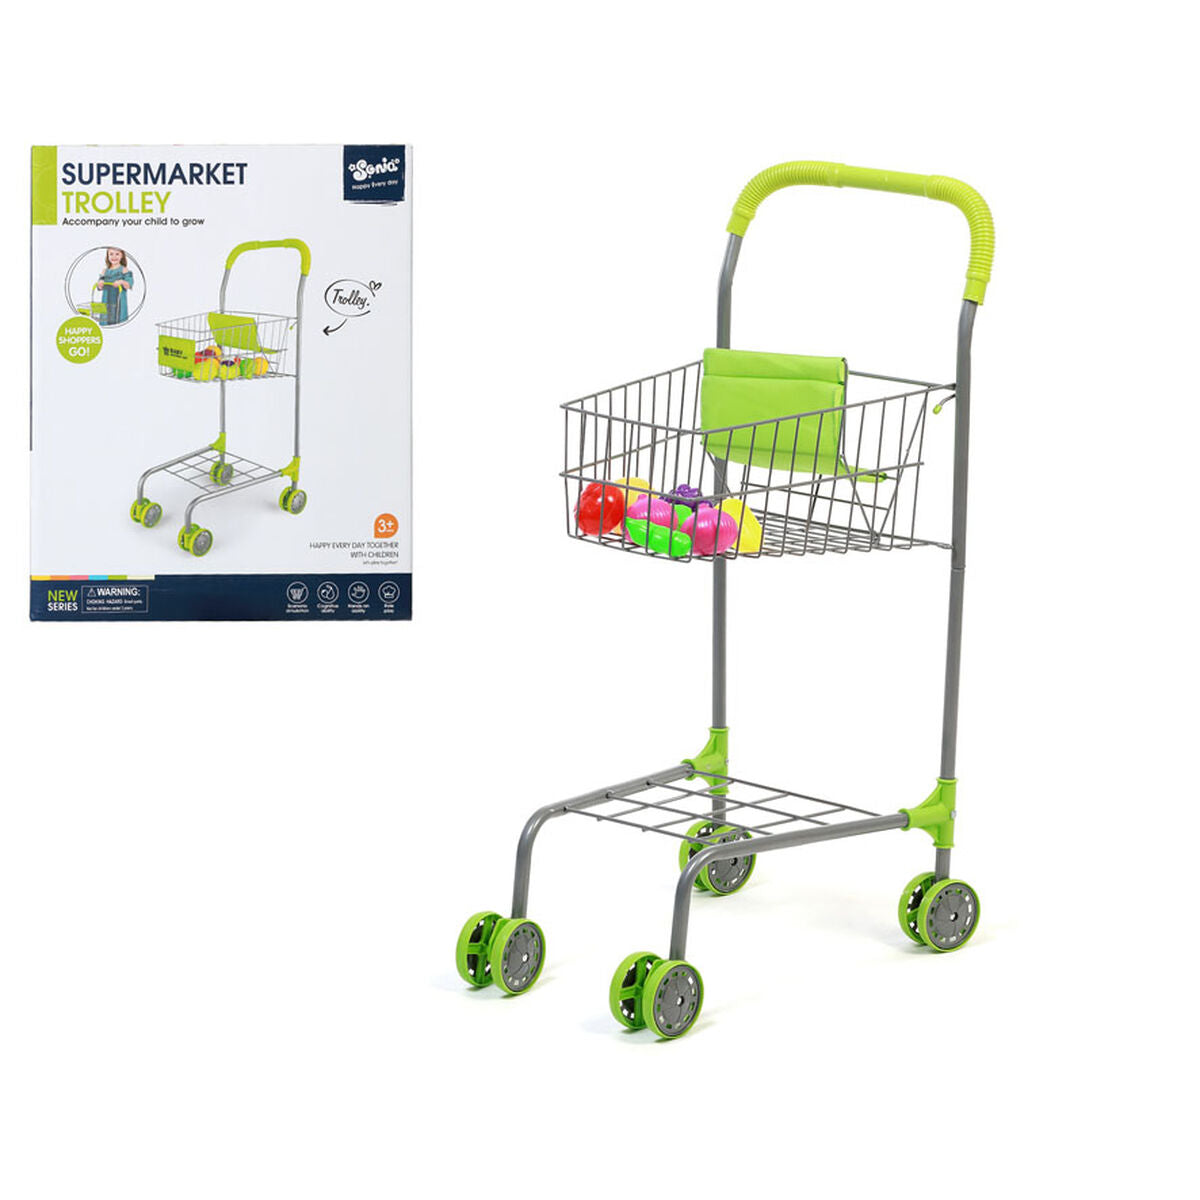 Shopping cart Green Children's 35 x 29 cm